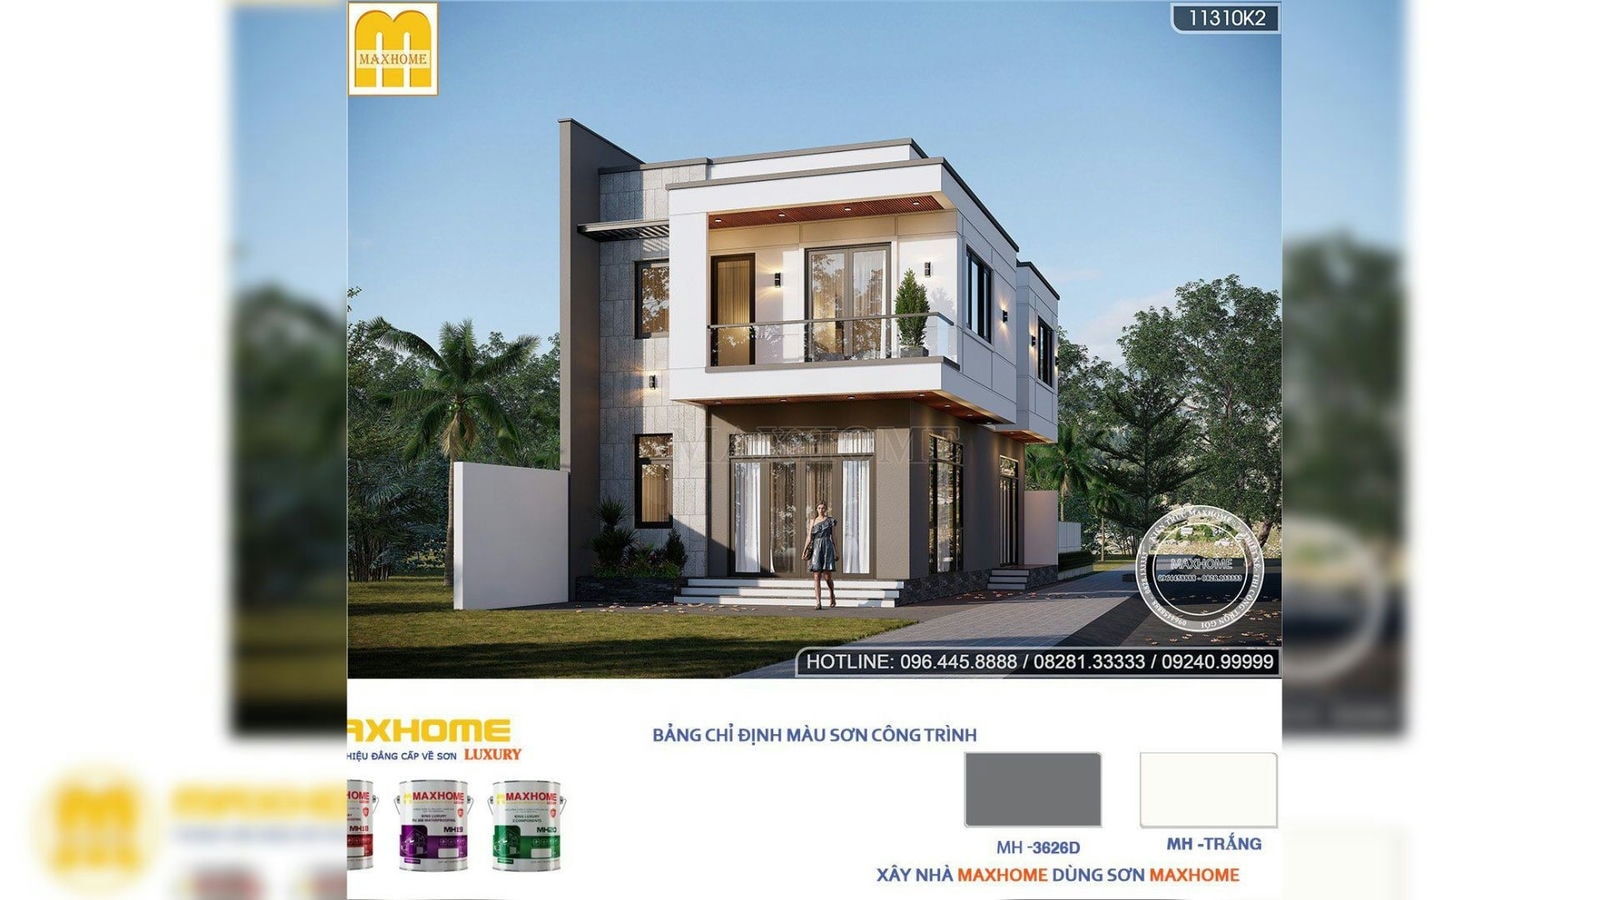 Thiết kế nhà hiện đại 2 tầng đẹp sang trọng tối ưu công năng | MH02635